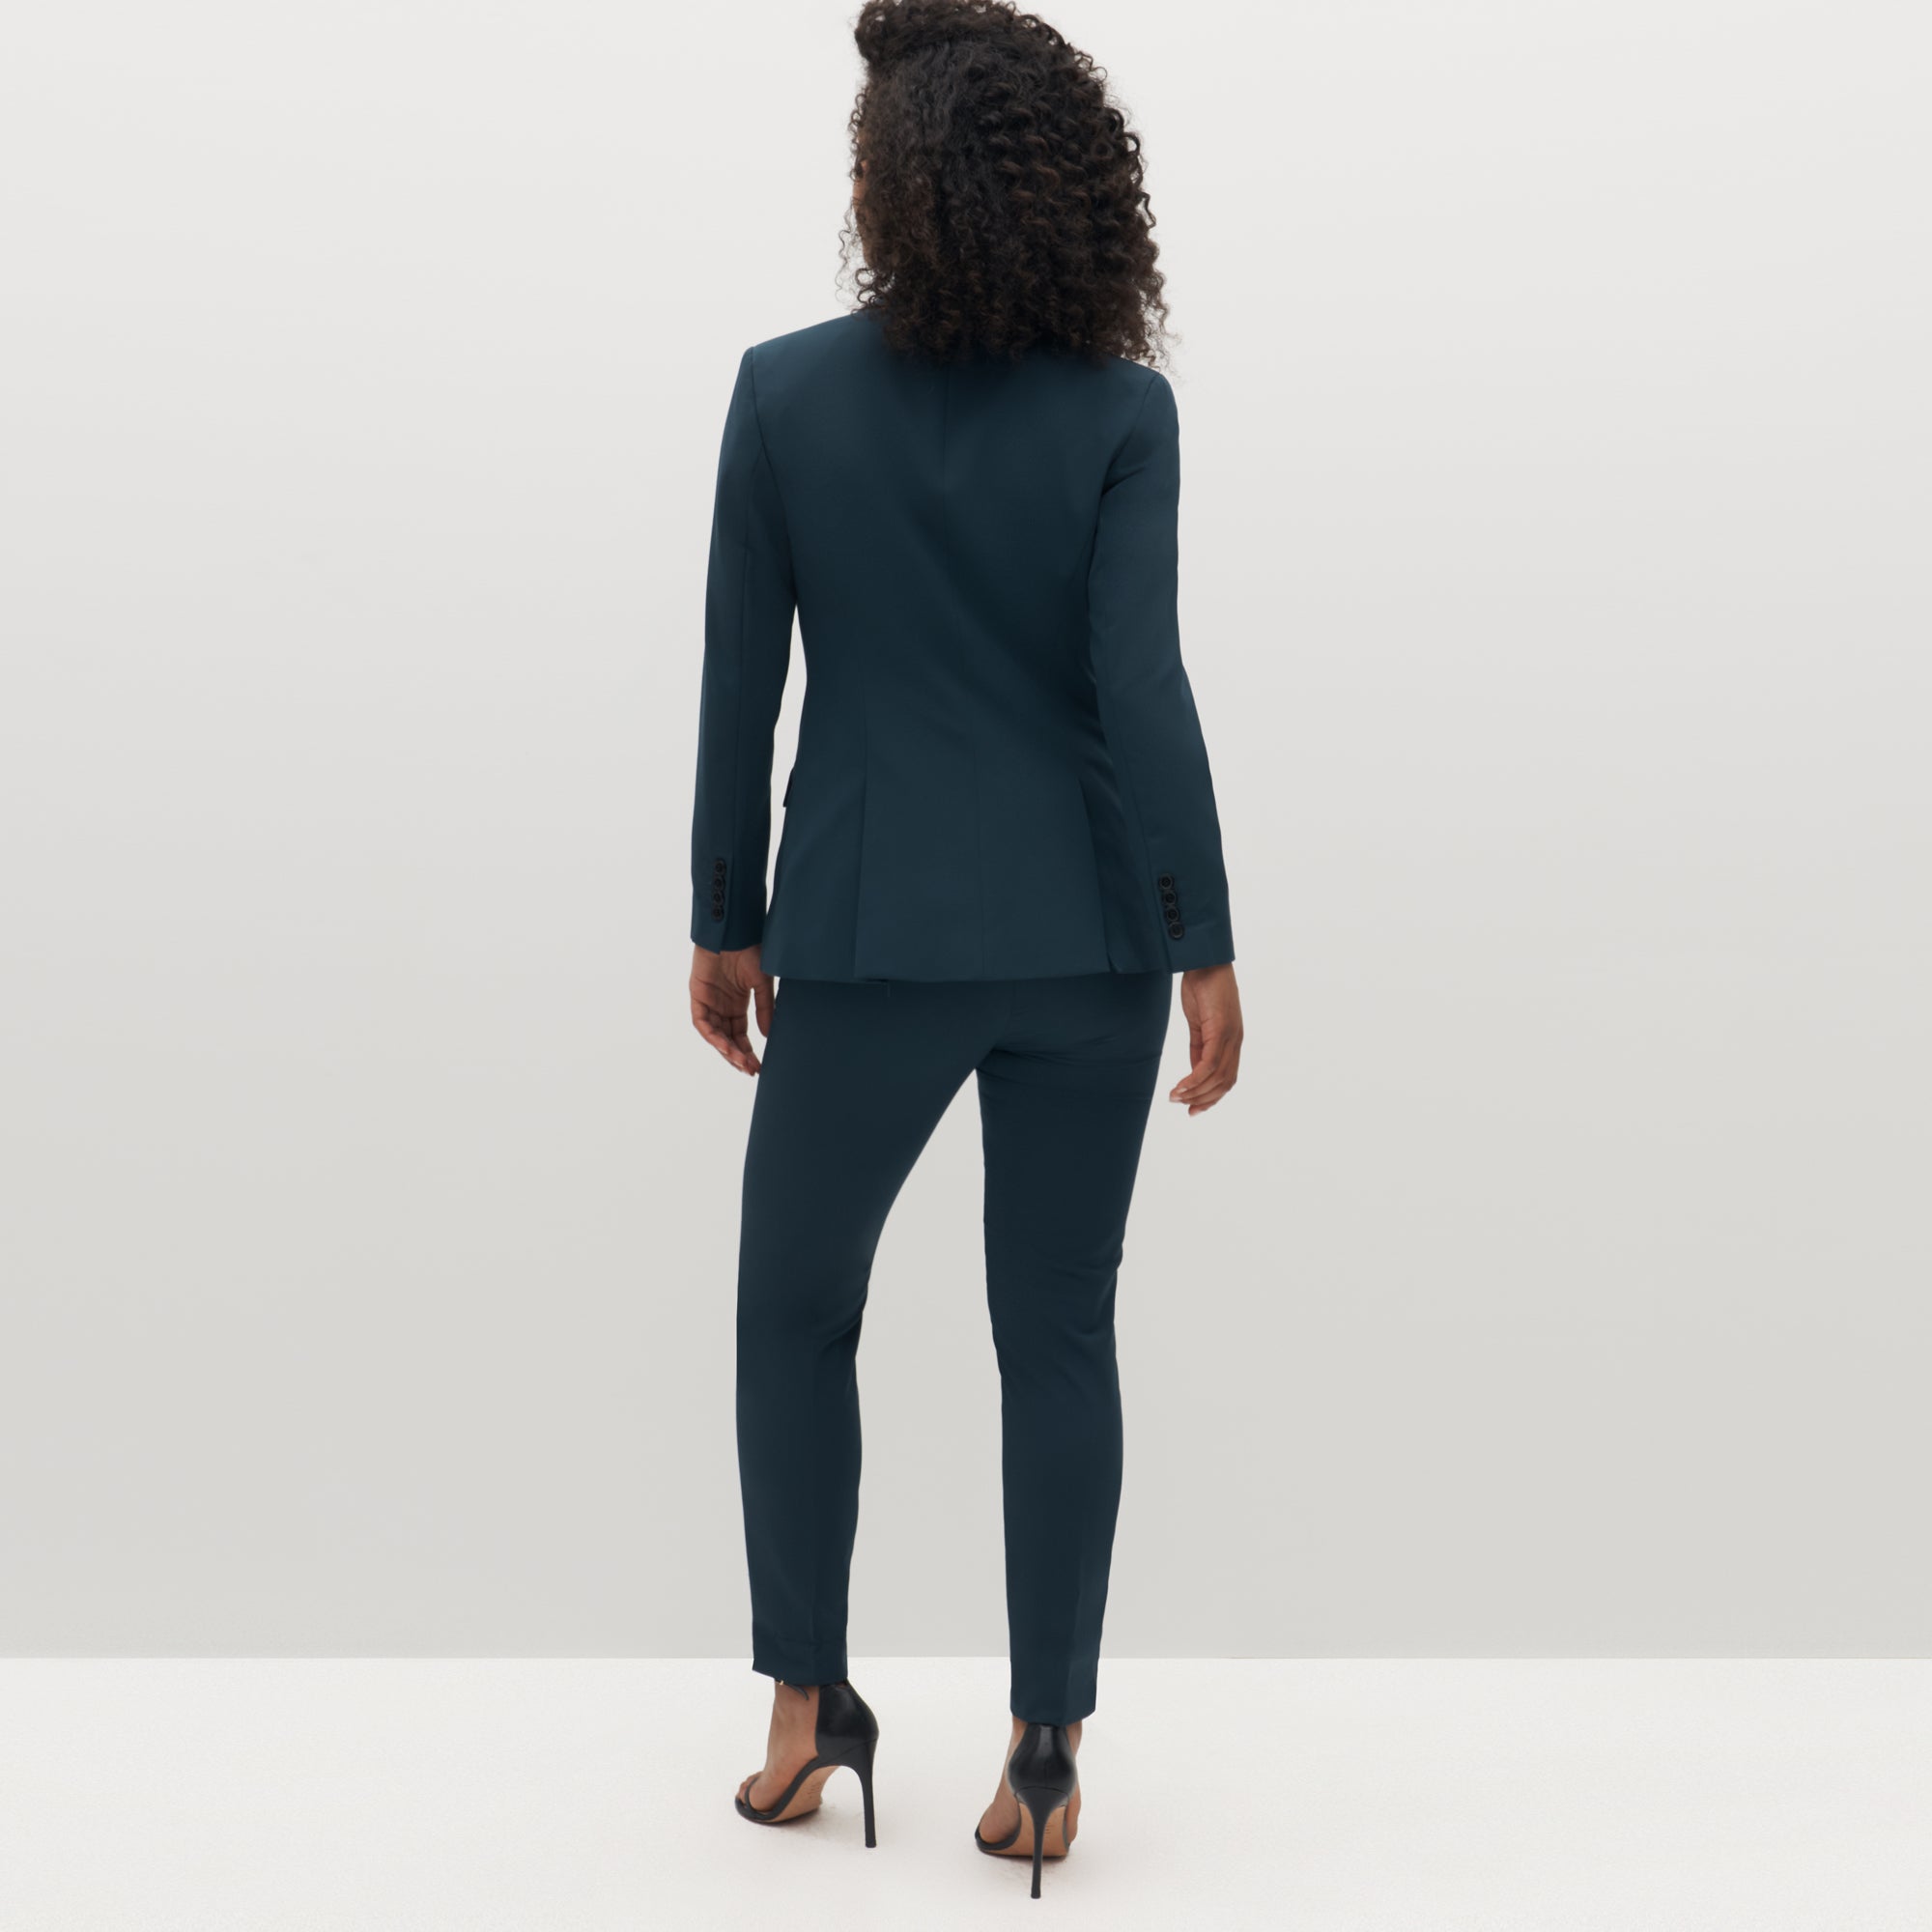 Women's Deep Teal Suit | SuitShop